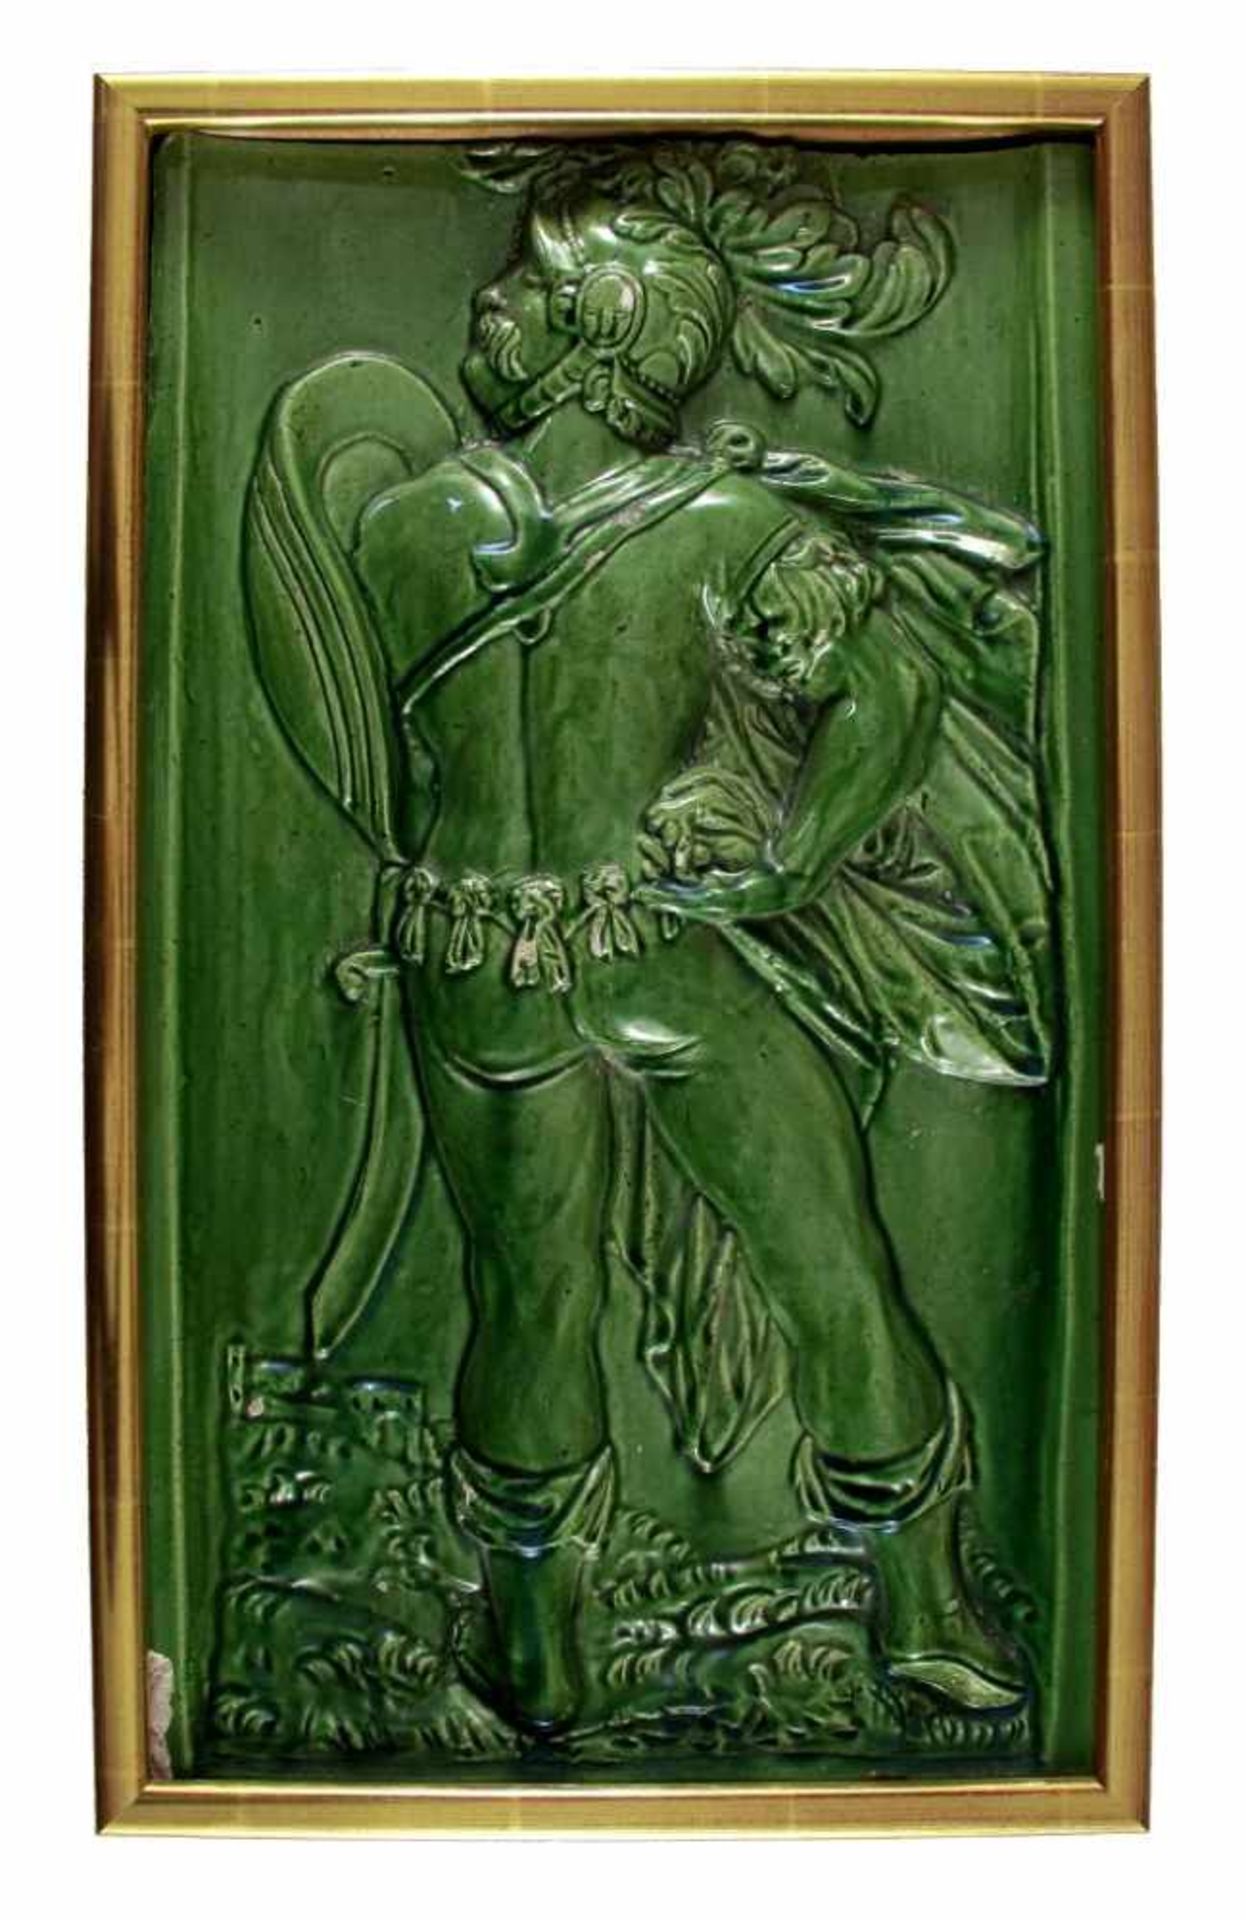 Große Ofenkachel. Nackter Krieger mit Schild. Grün glasierte Keramik. Historismus, 19. Jh. 47 x 27